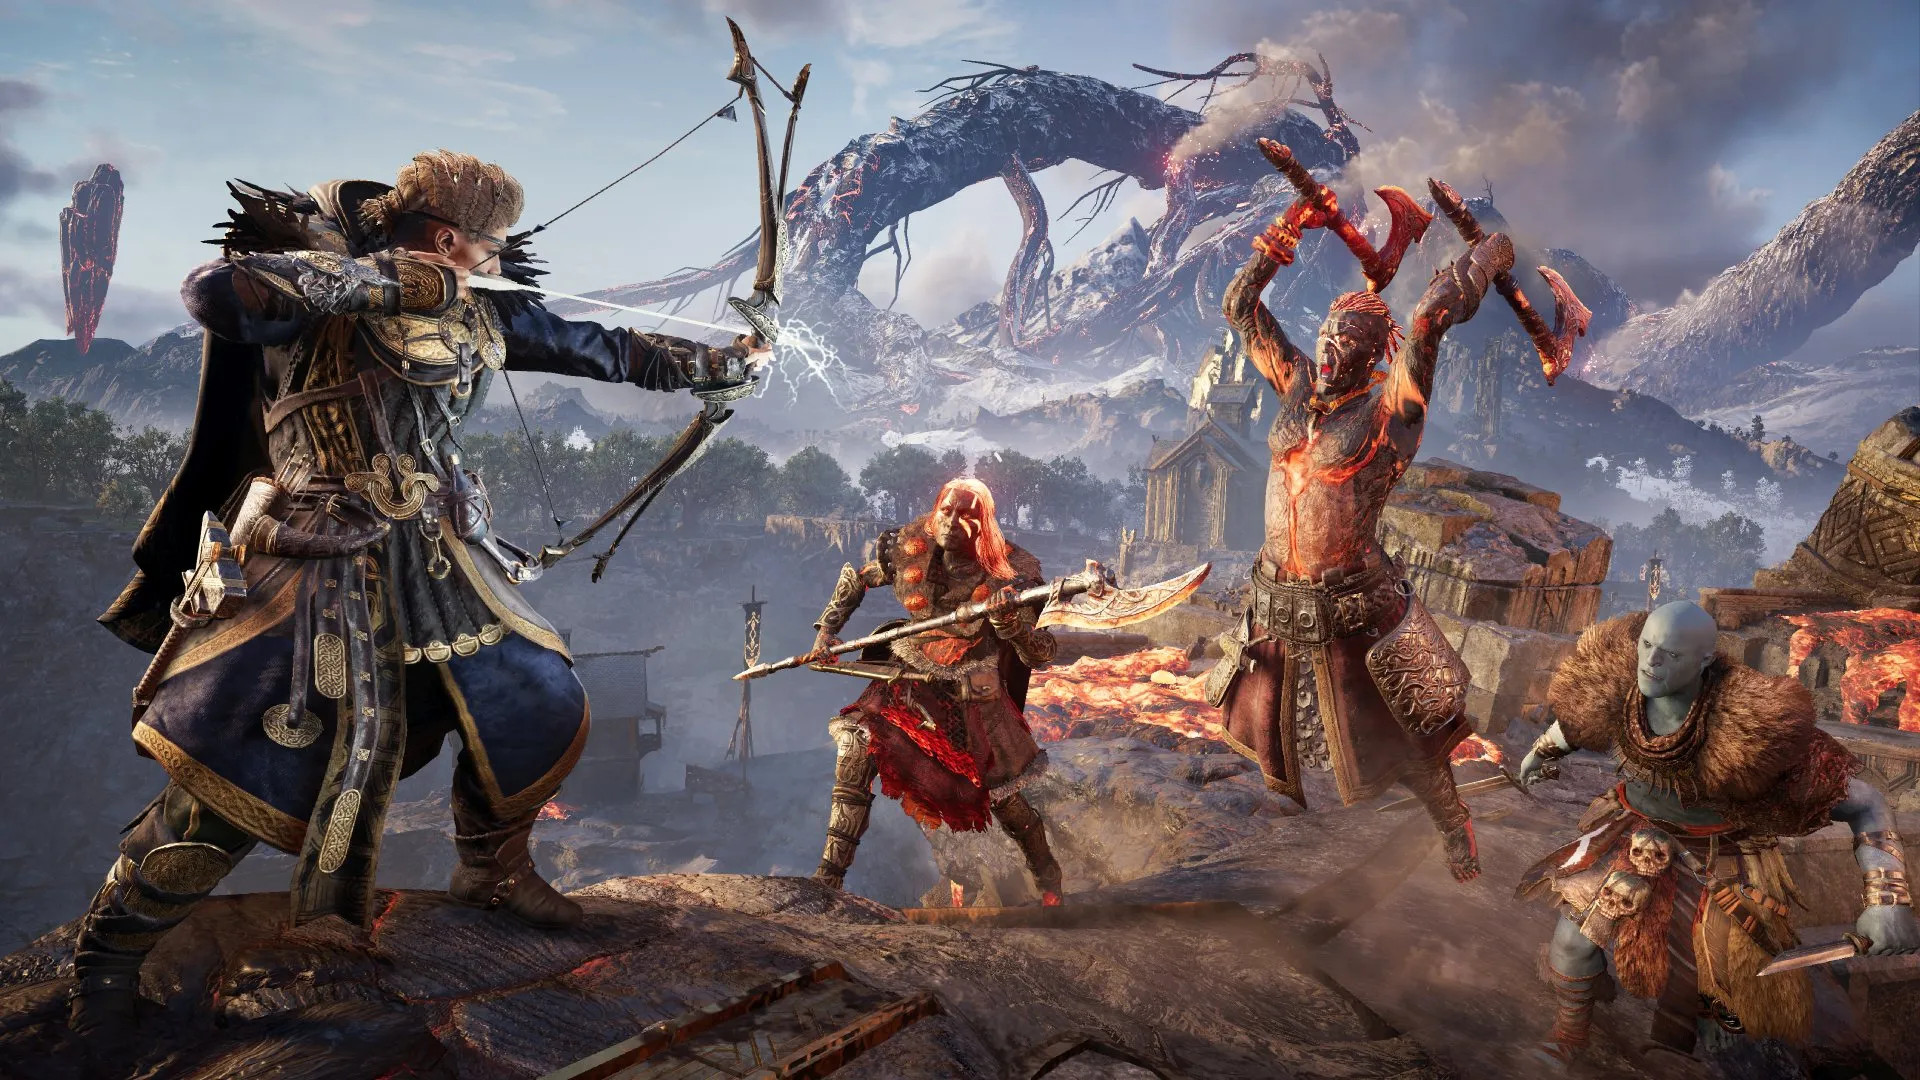 Havi loitando contra inimigos de lume en Assassin's Creed Valhalla: Dawn of Ragnarok